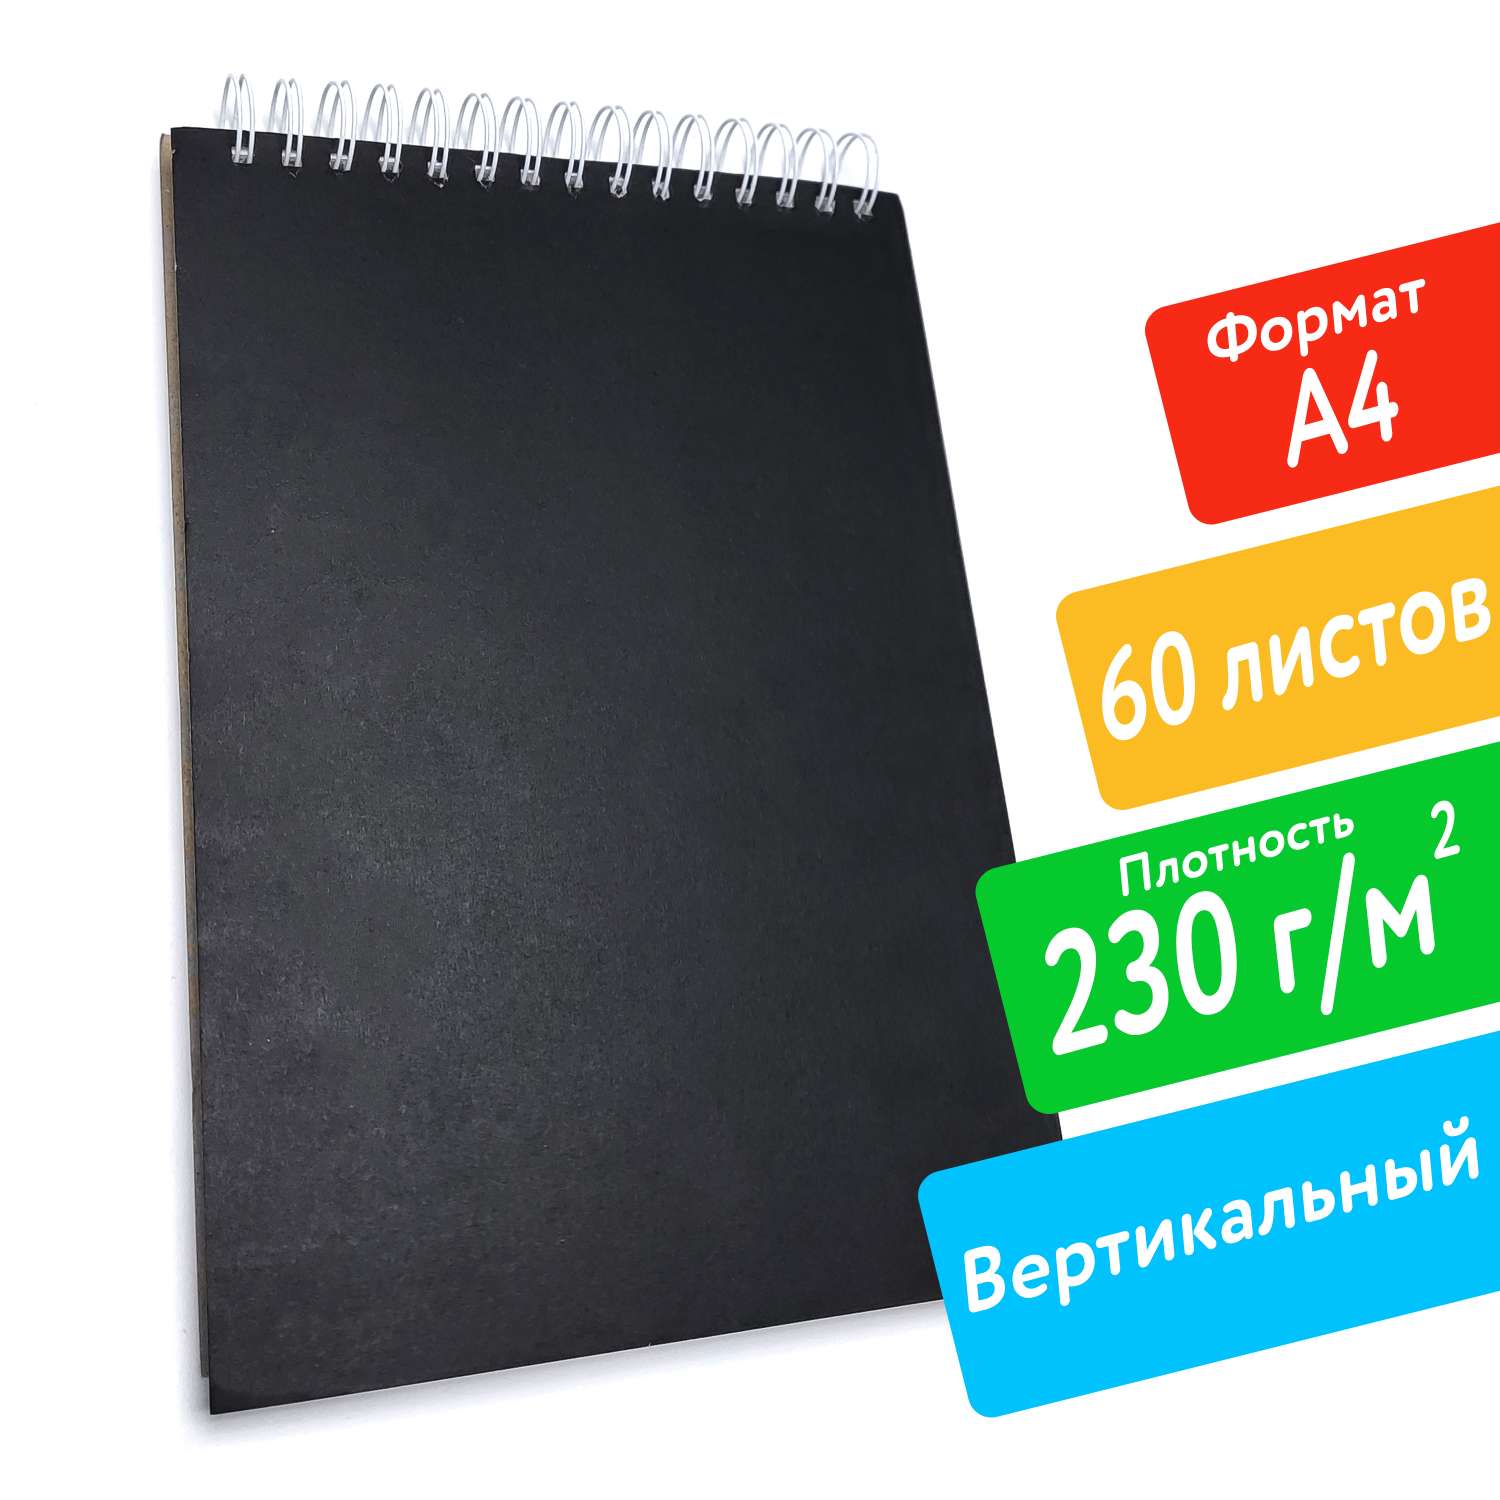 Скетчбук ПСВ А4 230грамм с черной обложкой вертикальный 60 листов - фото 2